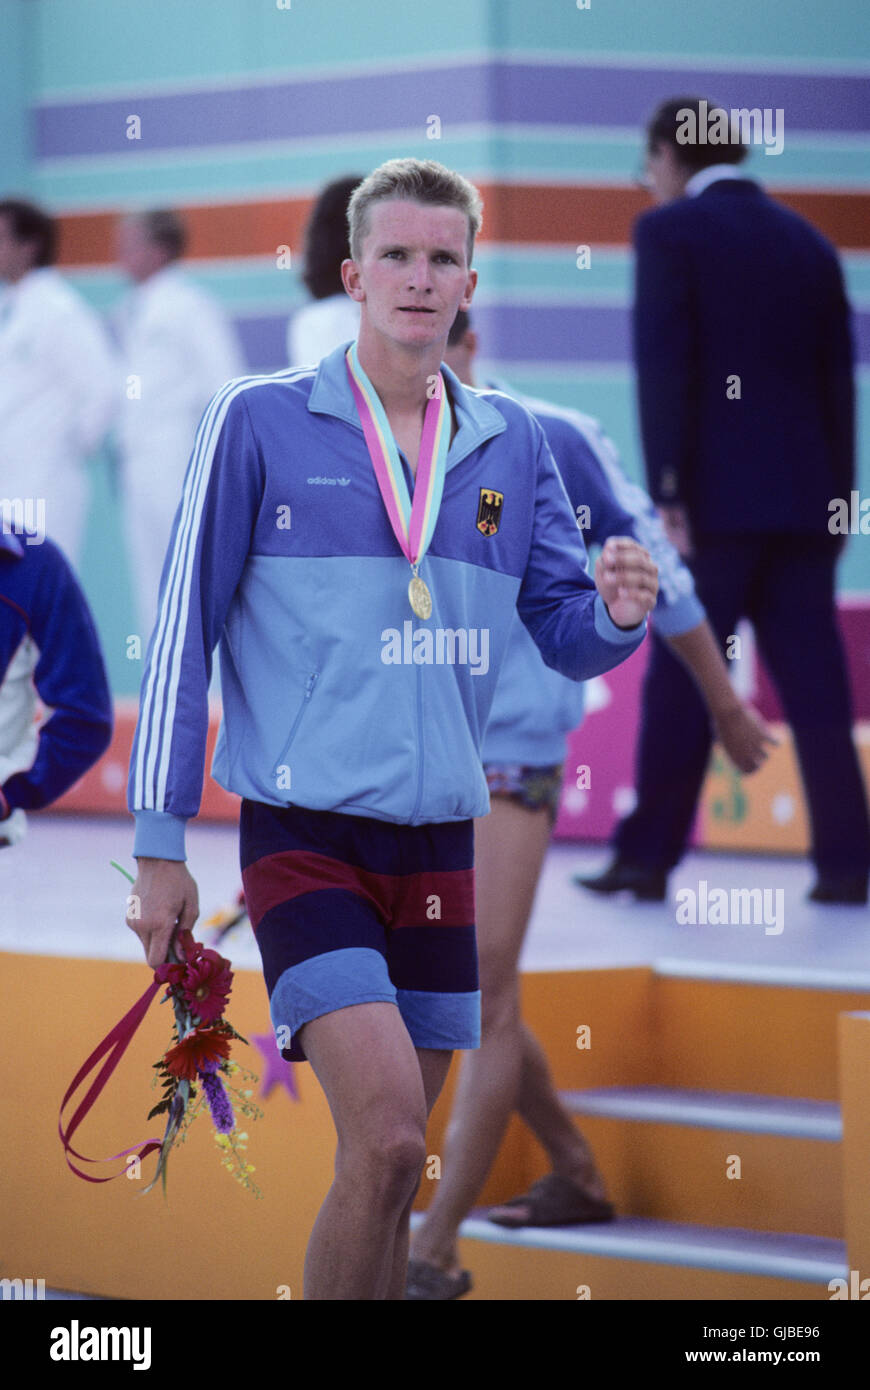 California - Los Angeles - 1984 giochi olimpici estivi. Uomini di nuoto. Michael Gross, Germania Ovest, 200m freestyle, medaglia d'oro Foto Stock